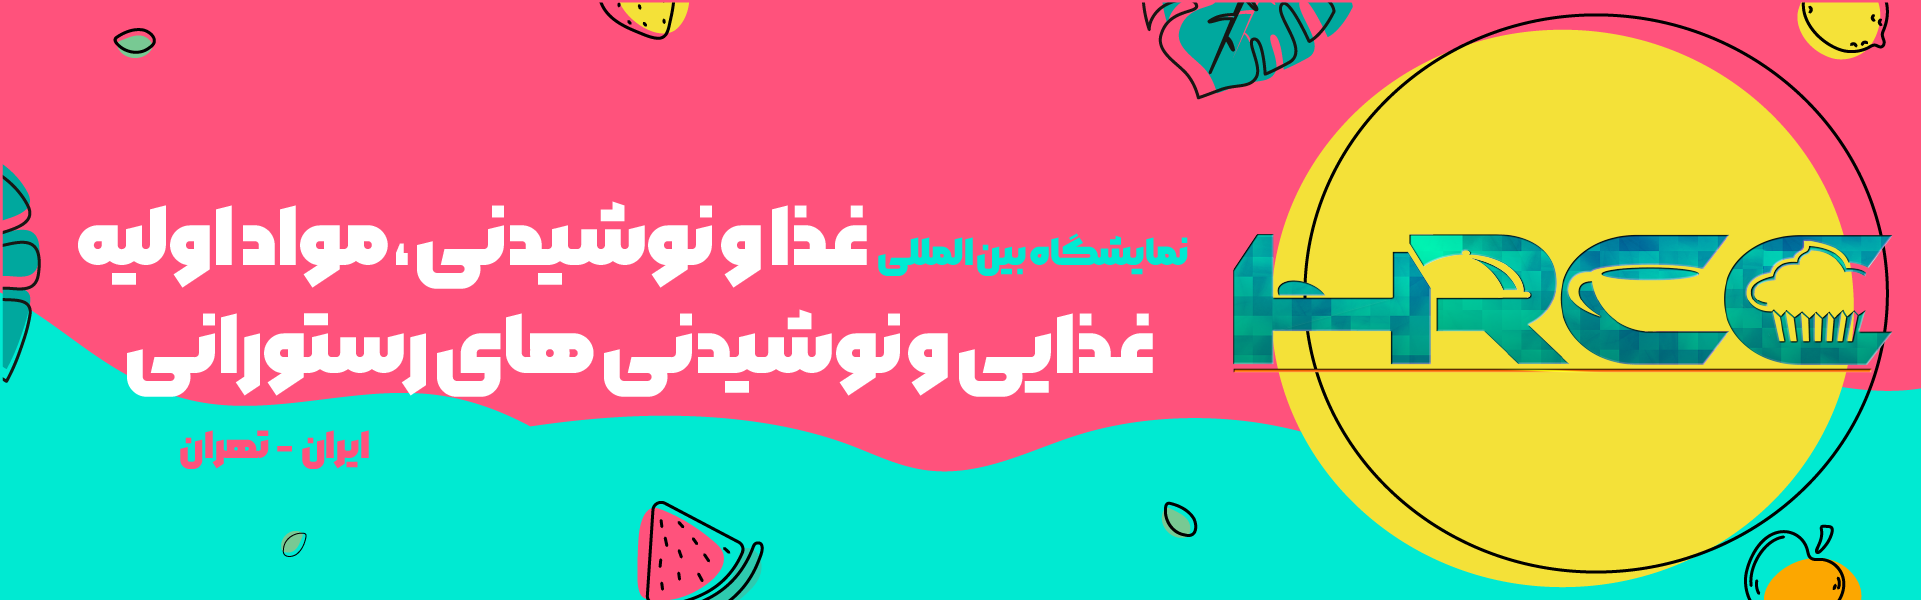 نمایشگاه بین المللی صنایع غذایی و نوشیدنی تهران ایران